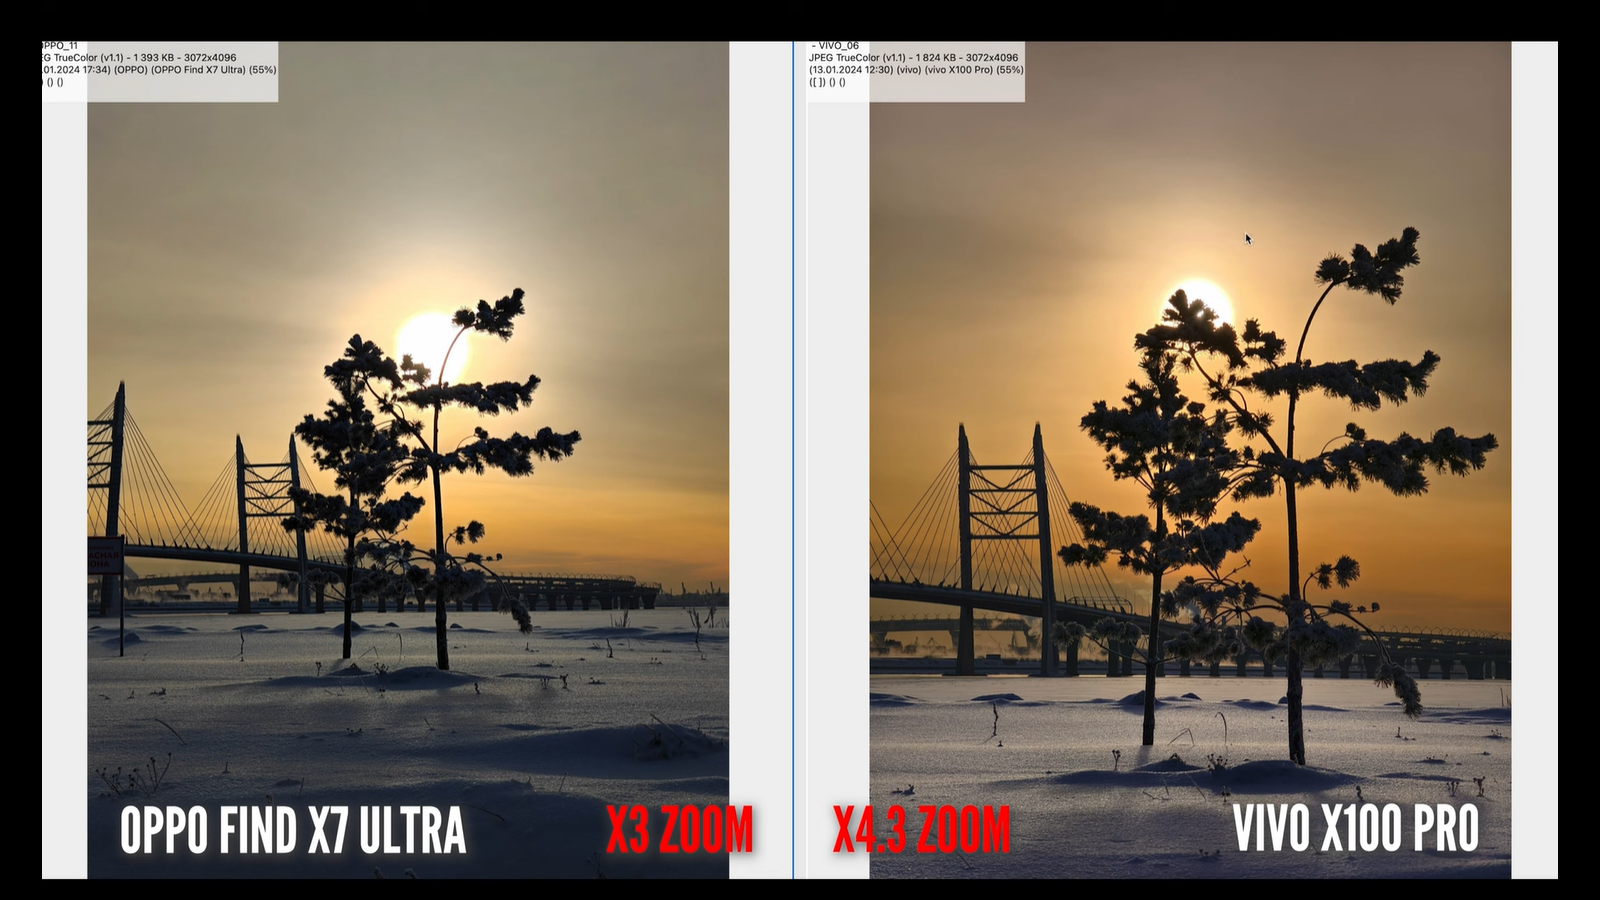 Китайские смартфоны с лучшими камерами - Vivo X100 Pro и Oppo Find X7 Ultra - сравнили7